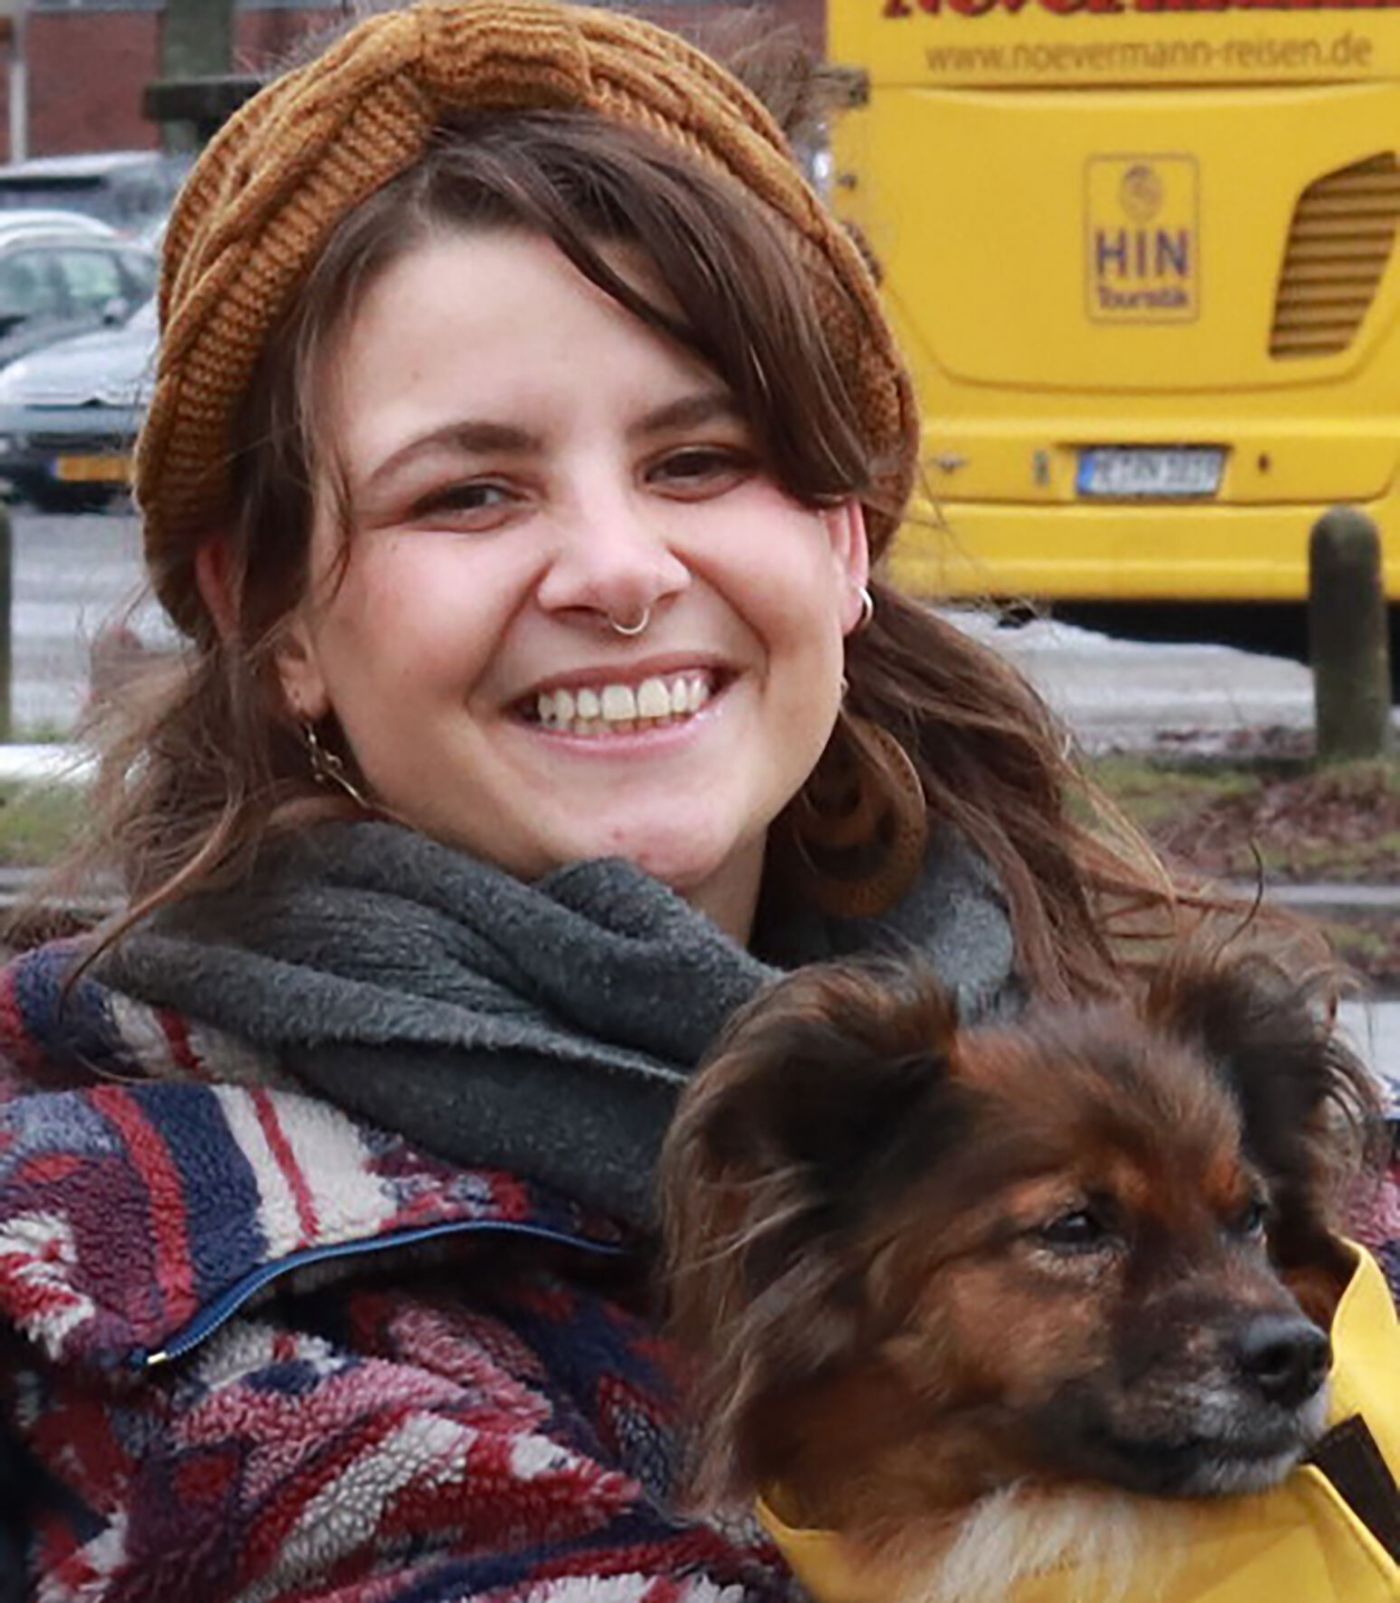 Eine Frau mit einem Hund auf dem Arm